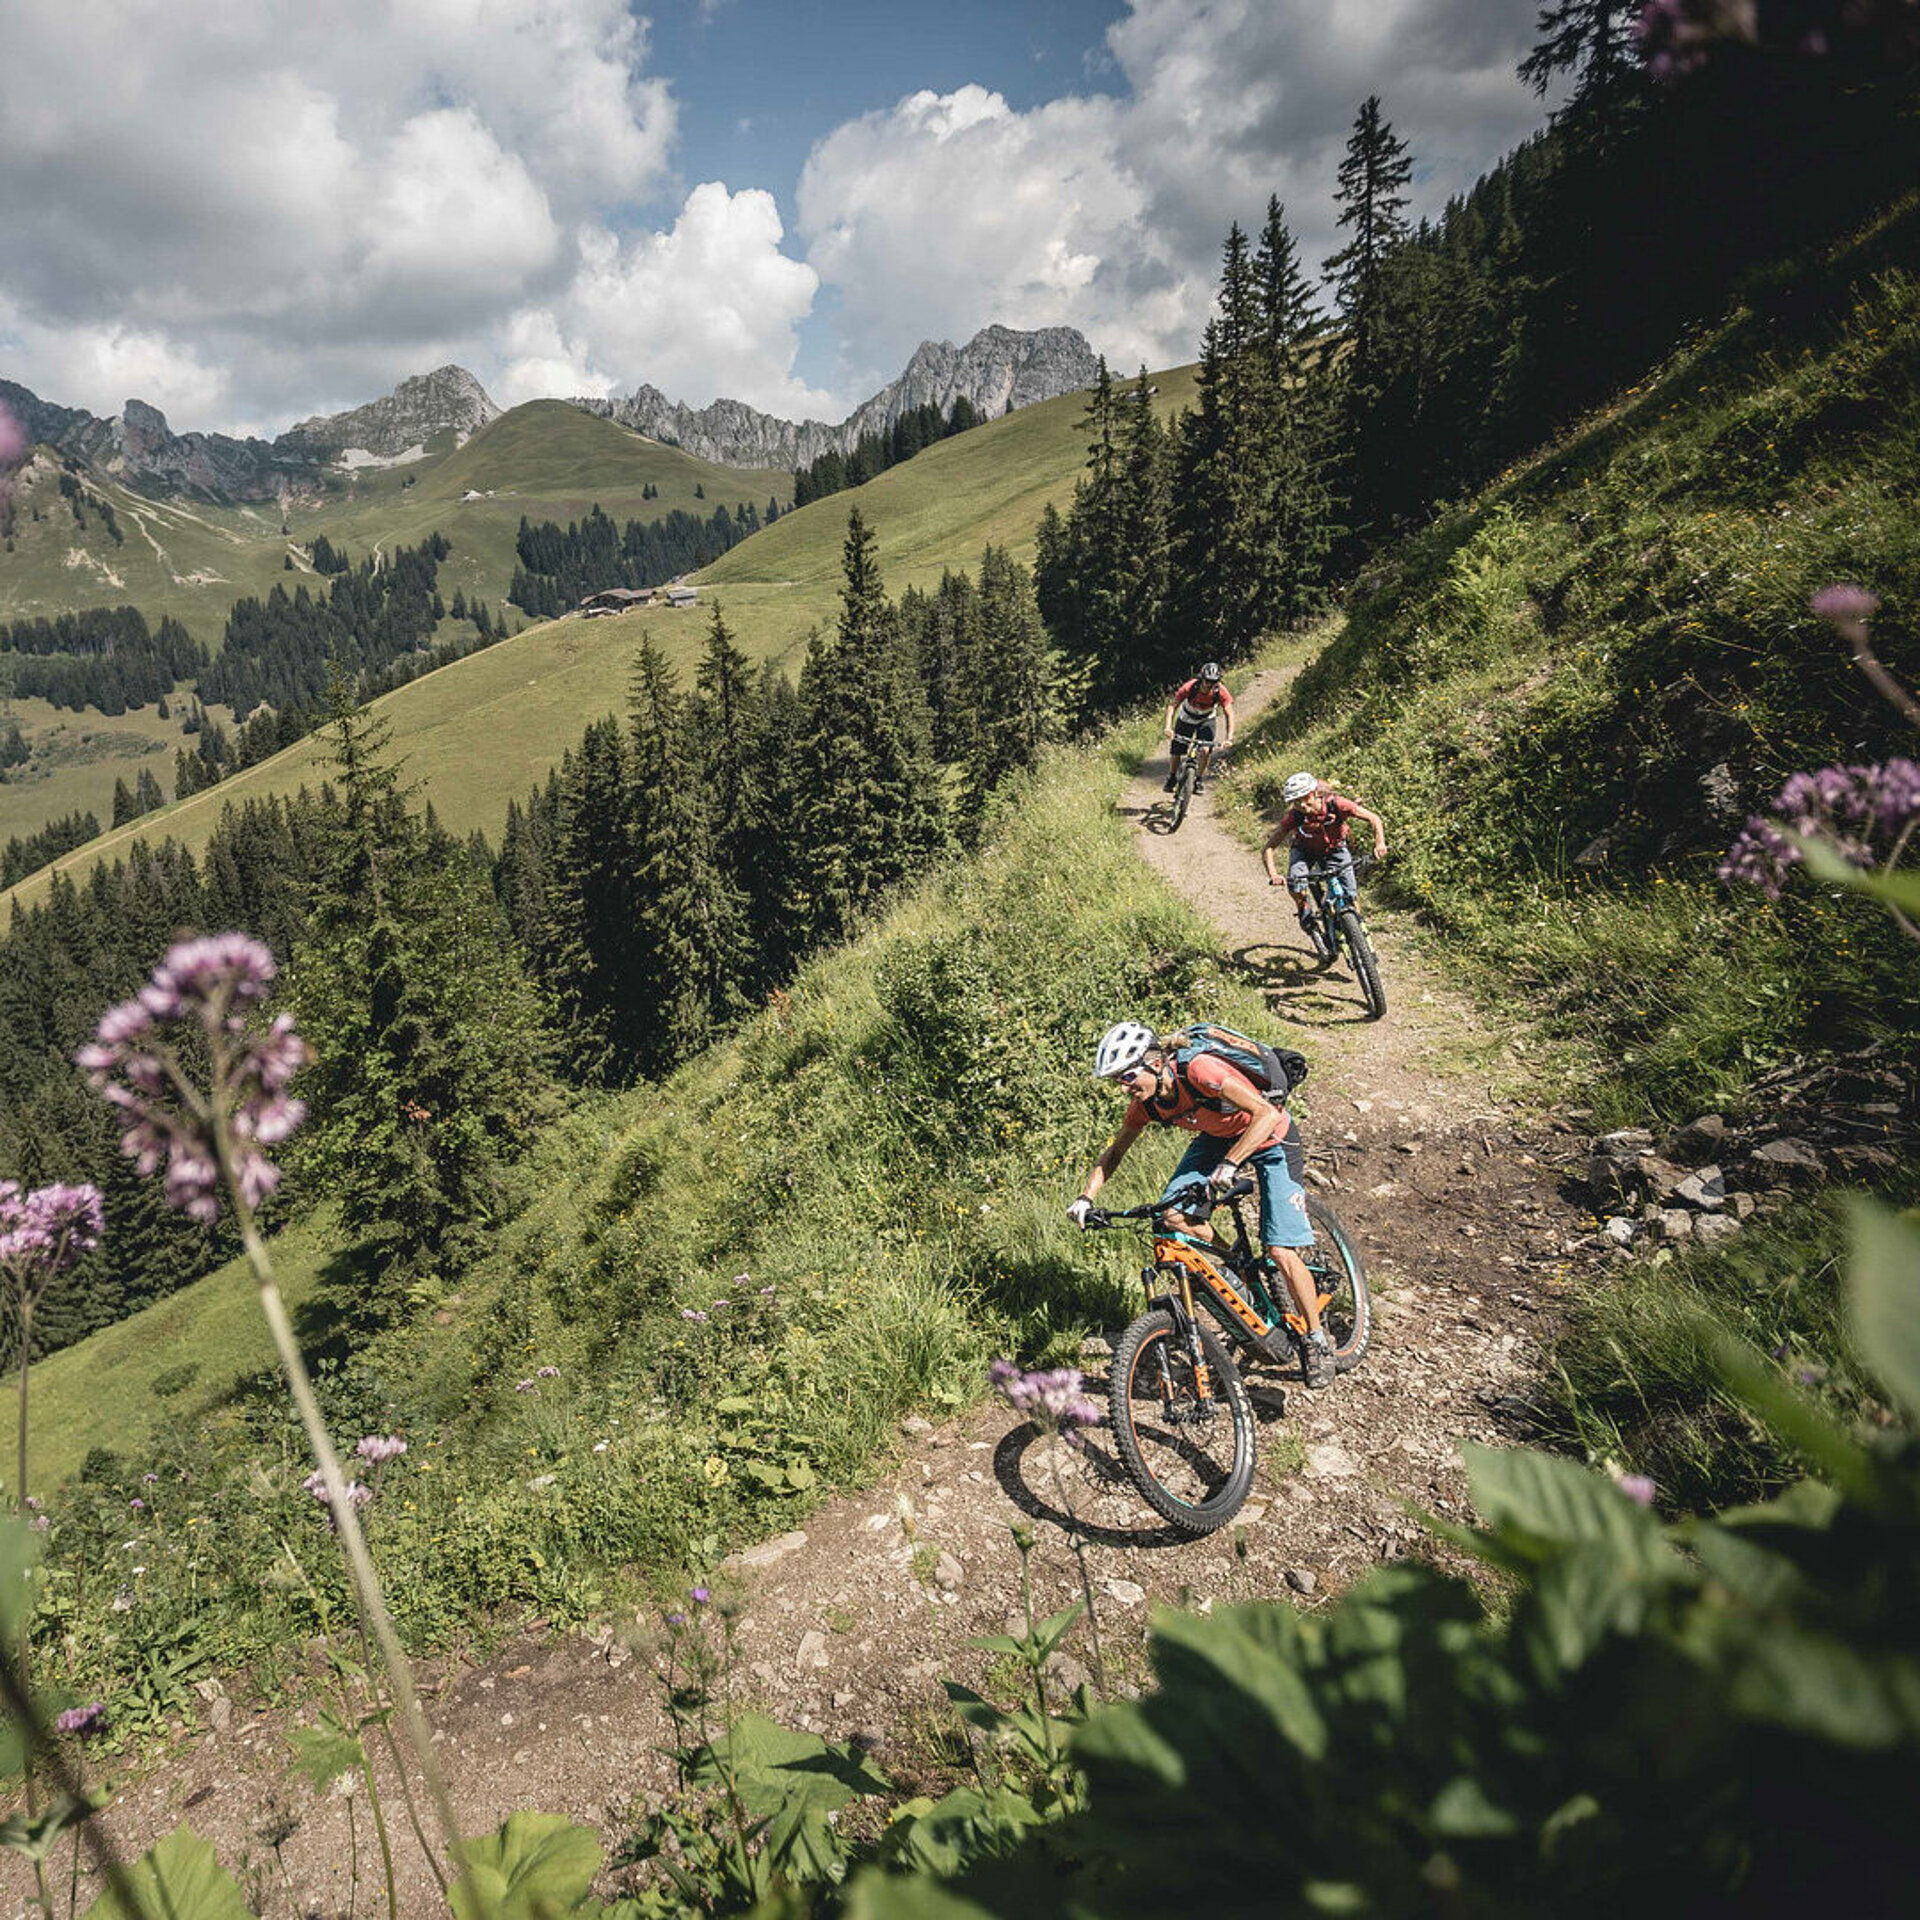 <p>Zwei Frauen und ein Mann fahren auf ihren E-Mountainbike den Schneit Trail mit Mittelberg her. Der Trail ist breit und erdig. Im Vordergund hat es ein paar unscharfe, violette Blumen.</p>